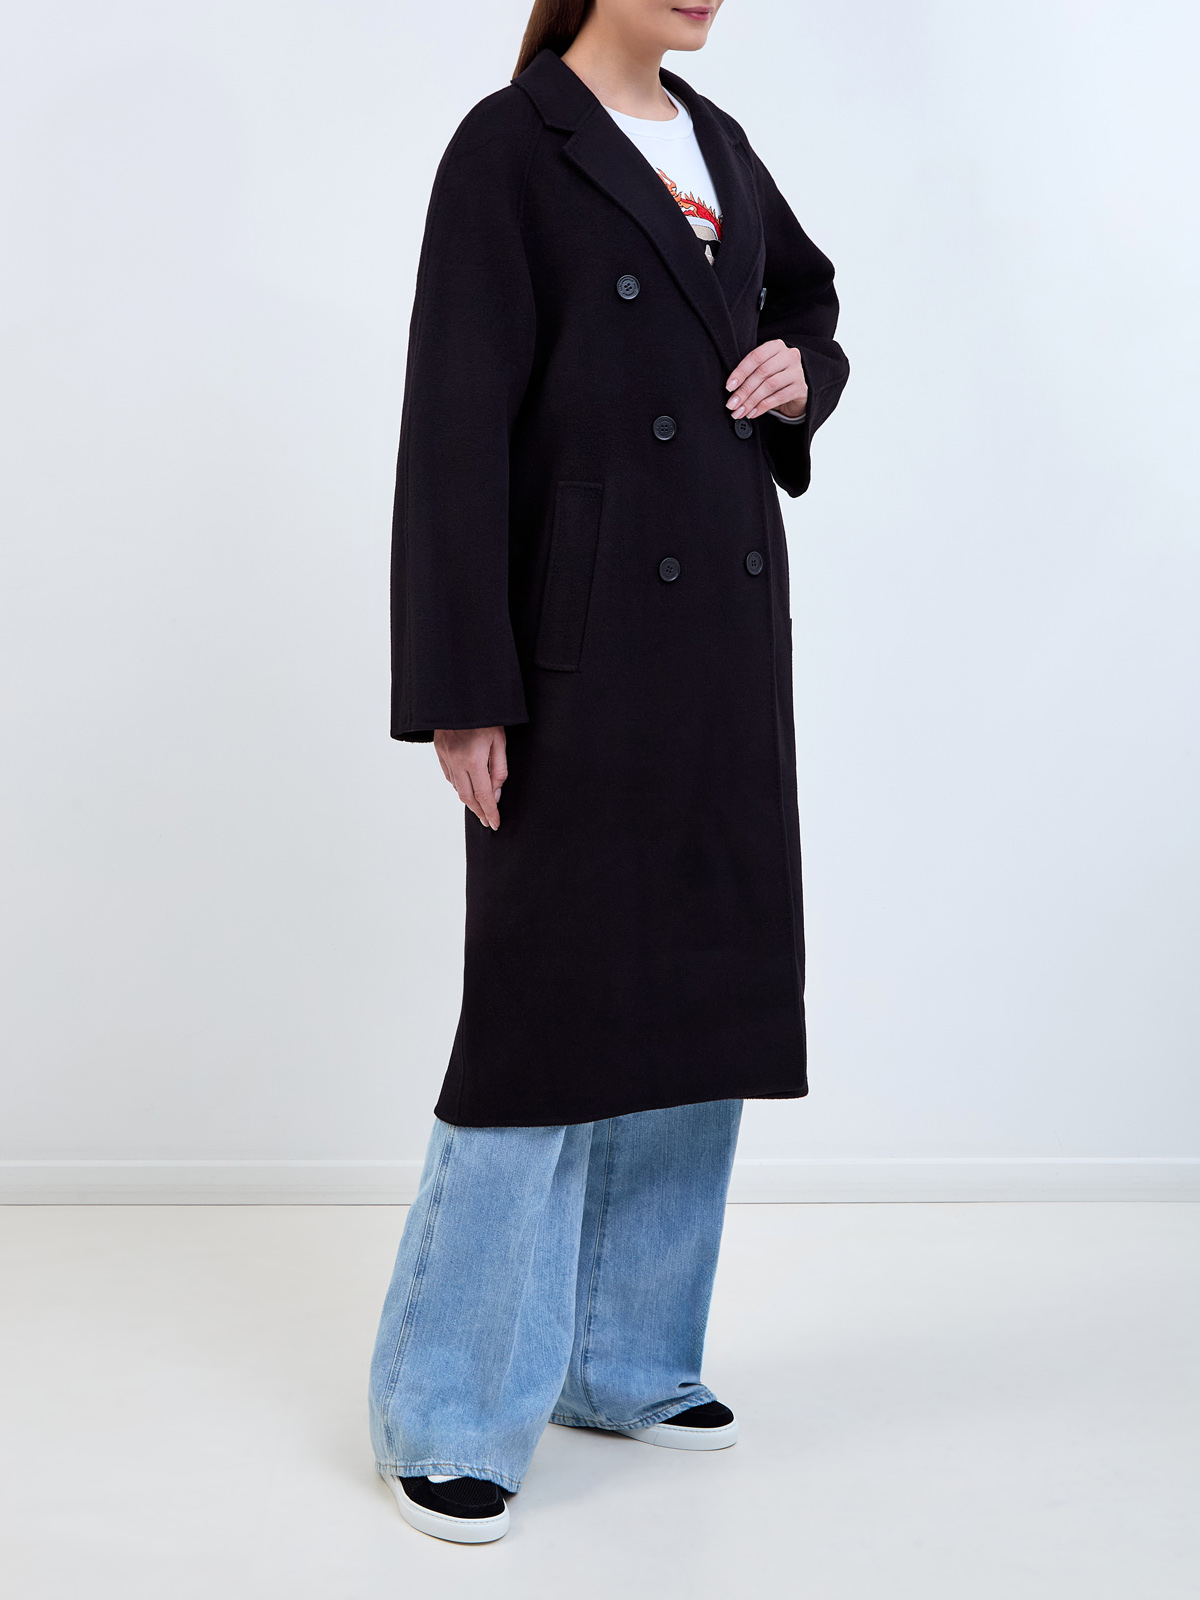 Двубортное пальто кроя oversize из плотной шерстяной ткани KARL LAGERFELD, цвет черный, размер 42;44;46;48 - фото 3